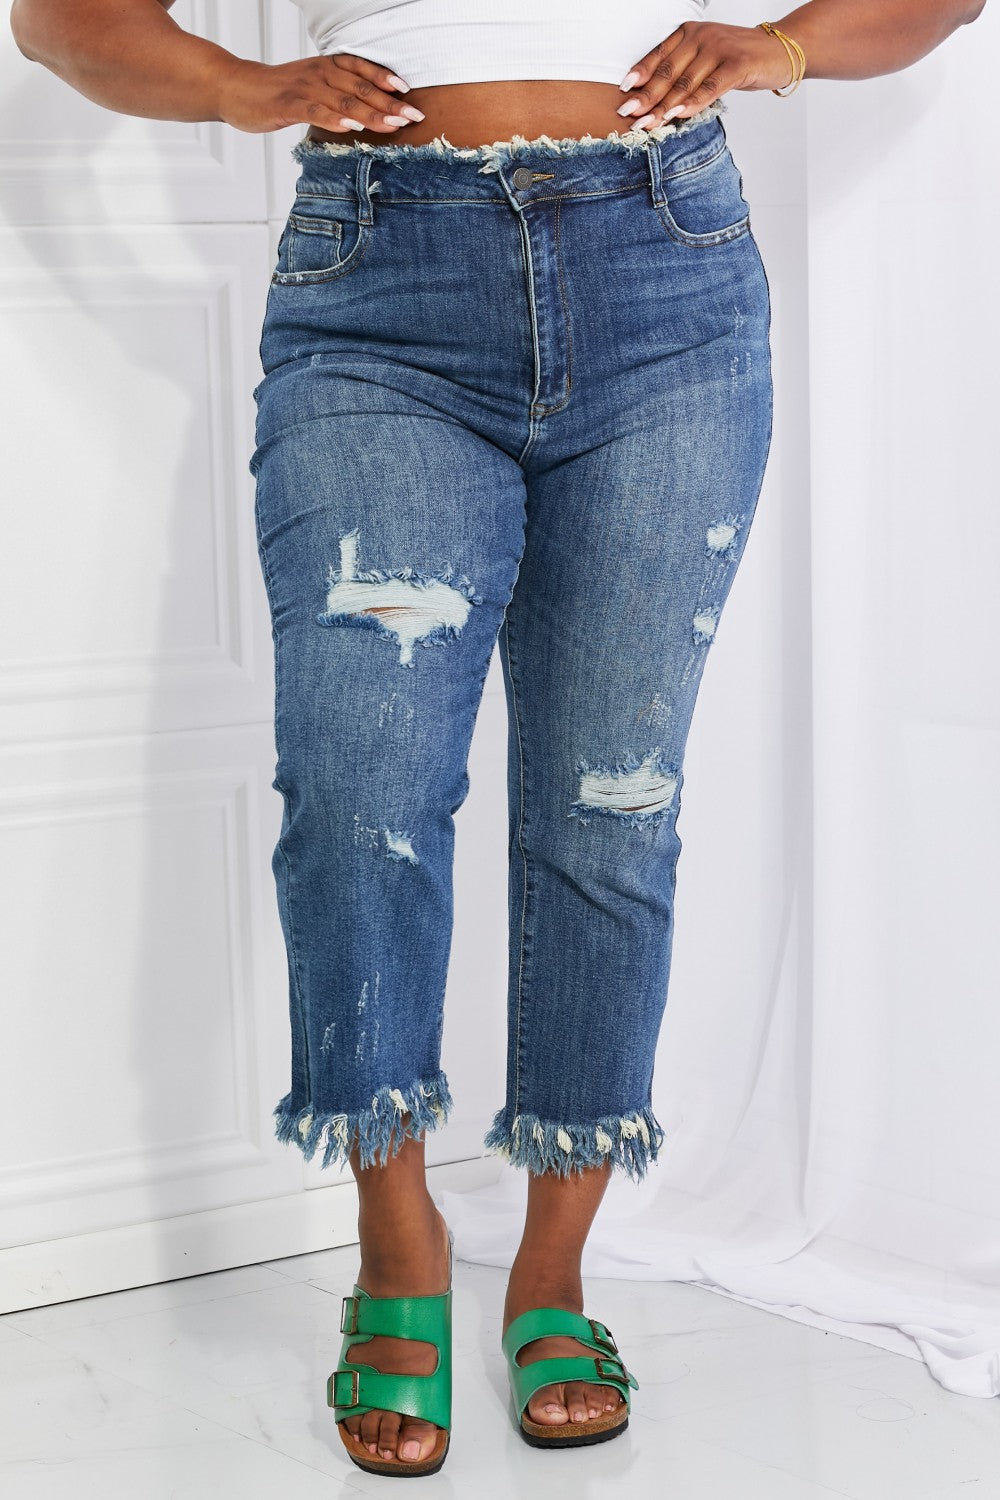 Undone Chic Straight Leg Jeans - Southern Divas Boutique